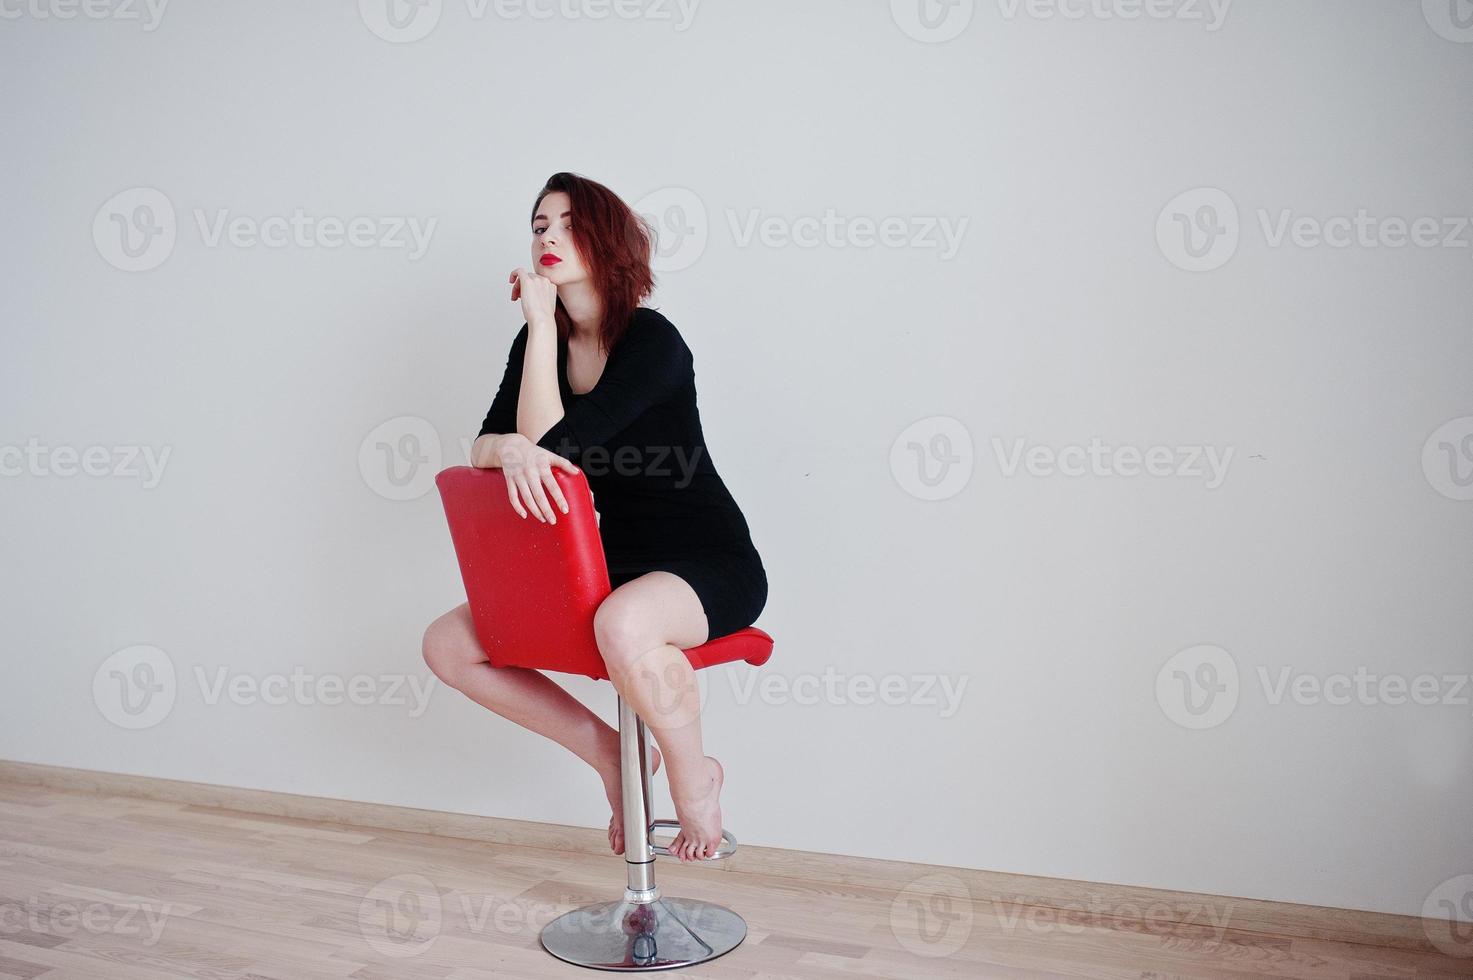 roodharige meisje op zwarte jurk tuniek zittend op rode stoel tegen witte muur op lege kamer. foto